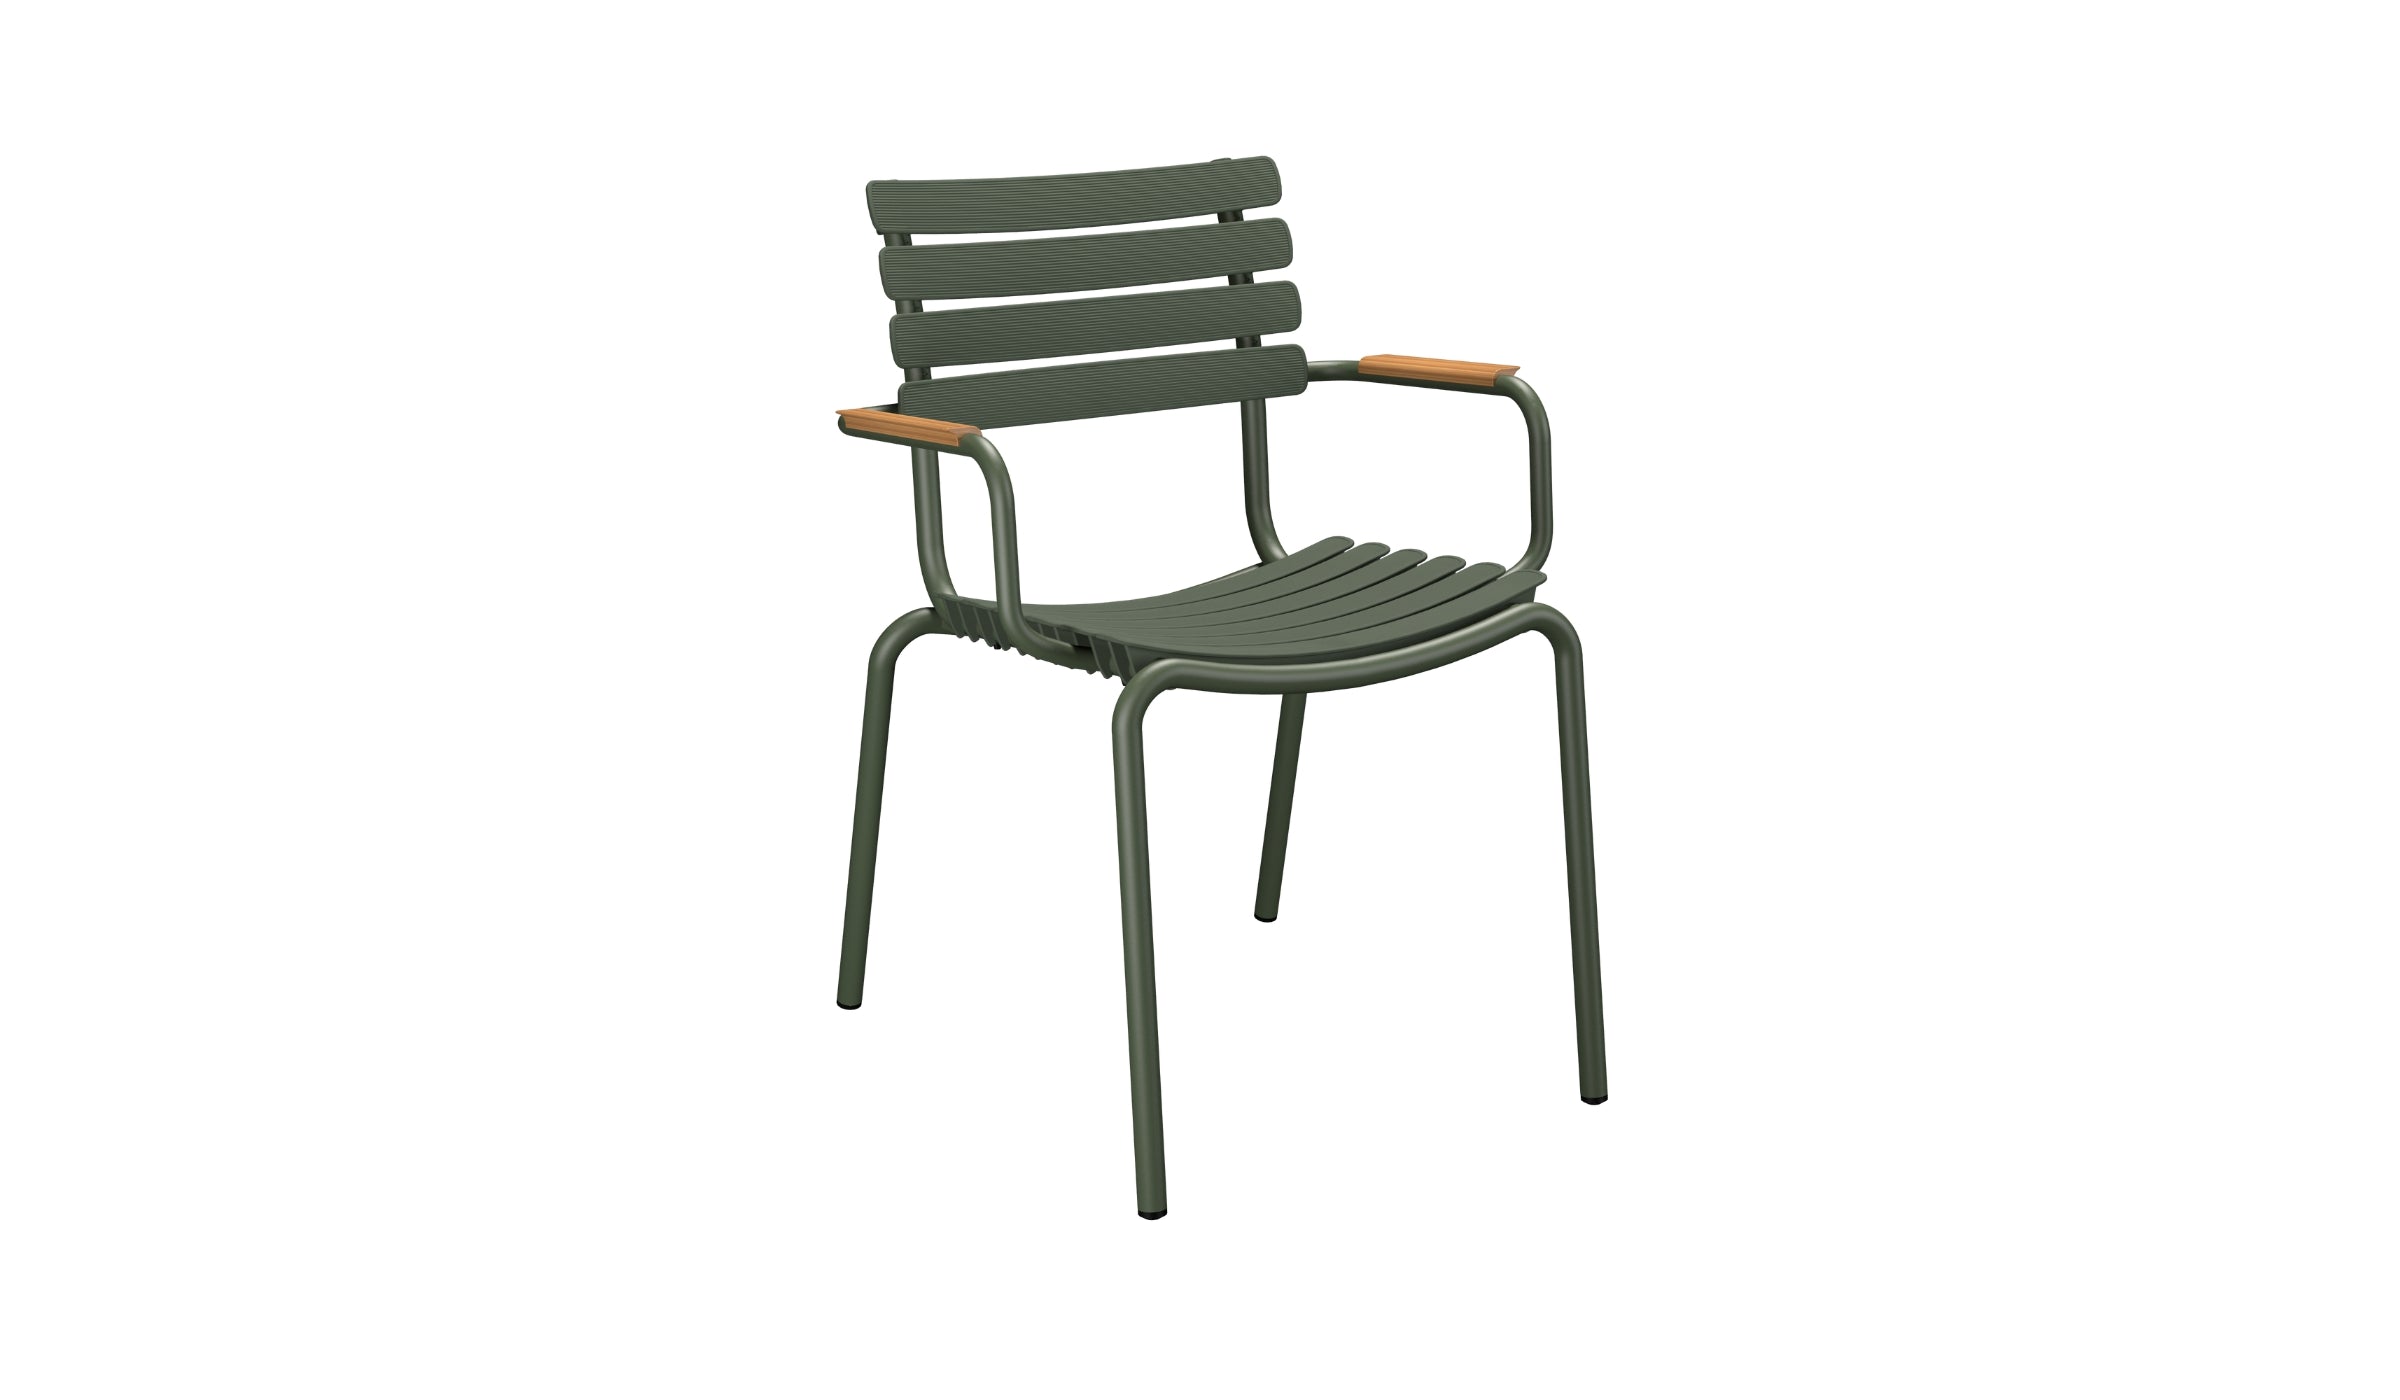 Reclips - Chaise d'extérieur en aluminium et plastique recyclé avec accoudoirs en bambou, vert olive